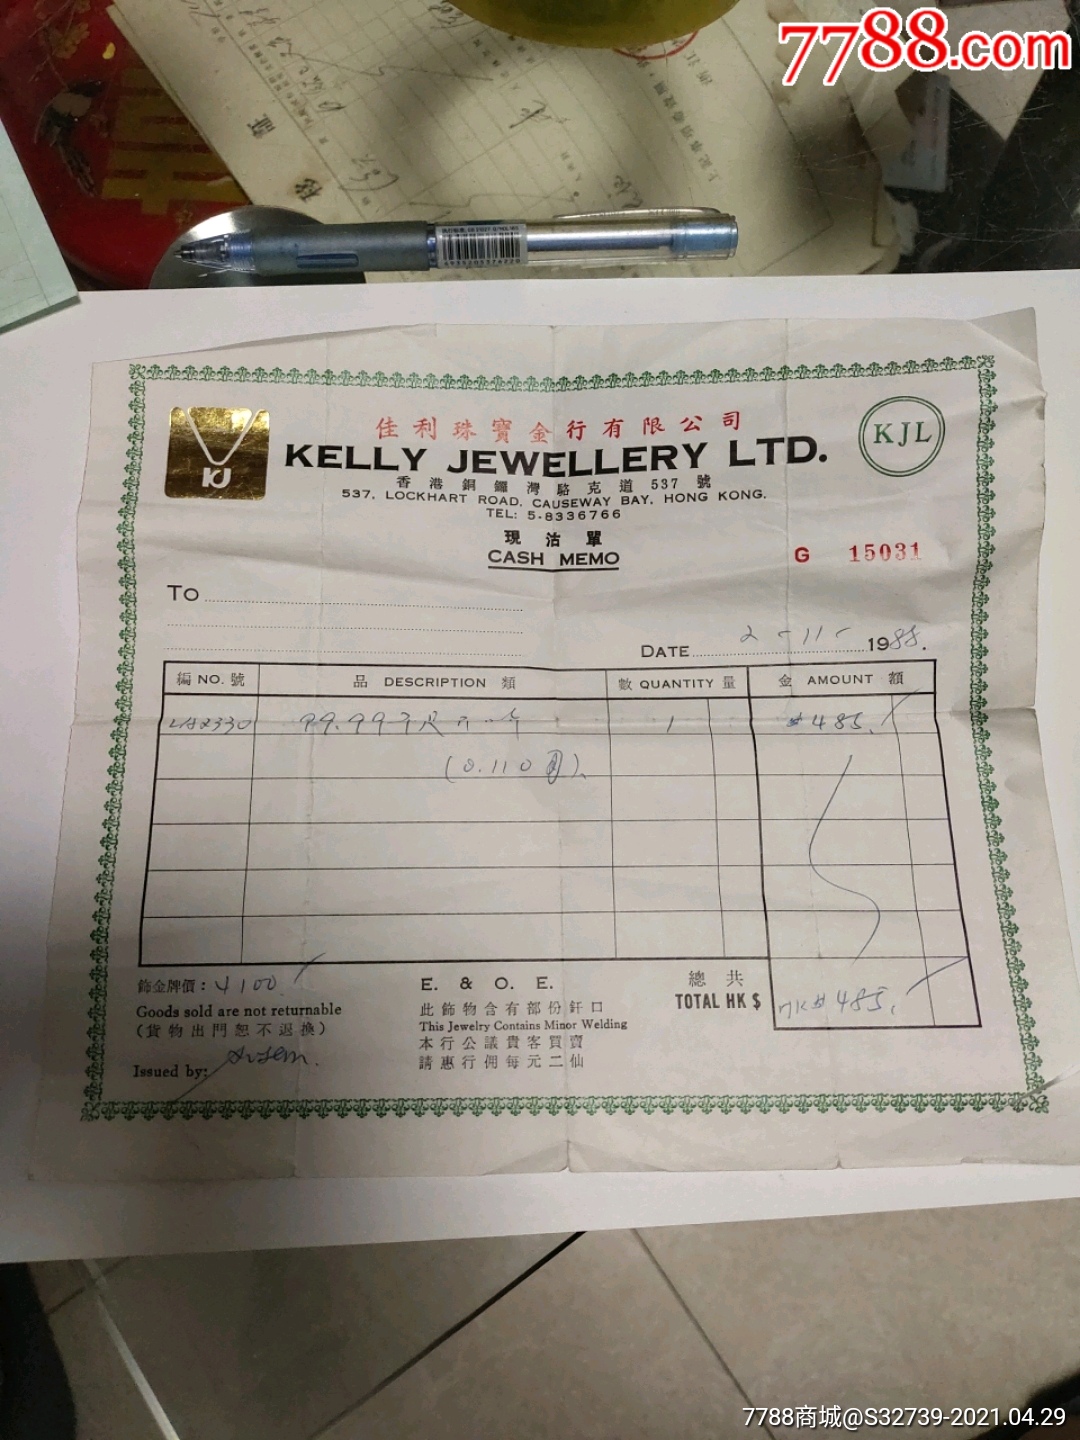 1988年购买开口戒指,香港嘉利珠宝金行有限公司_收据/收条_图片收藏